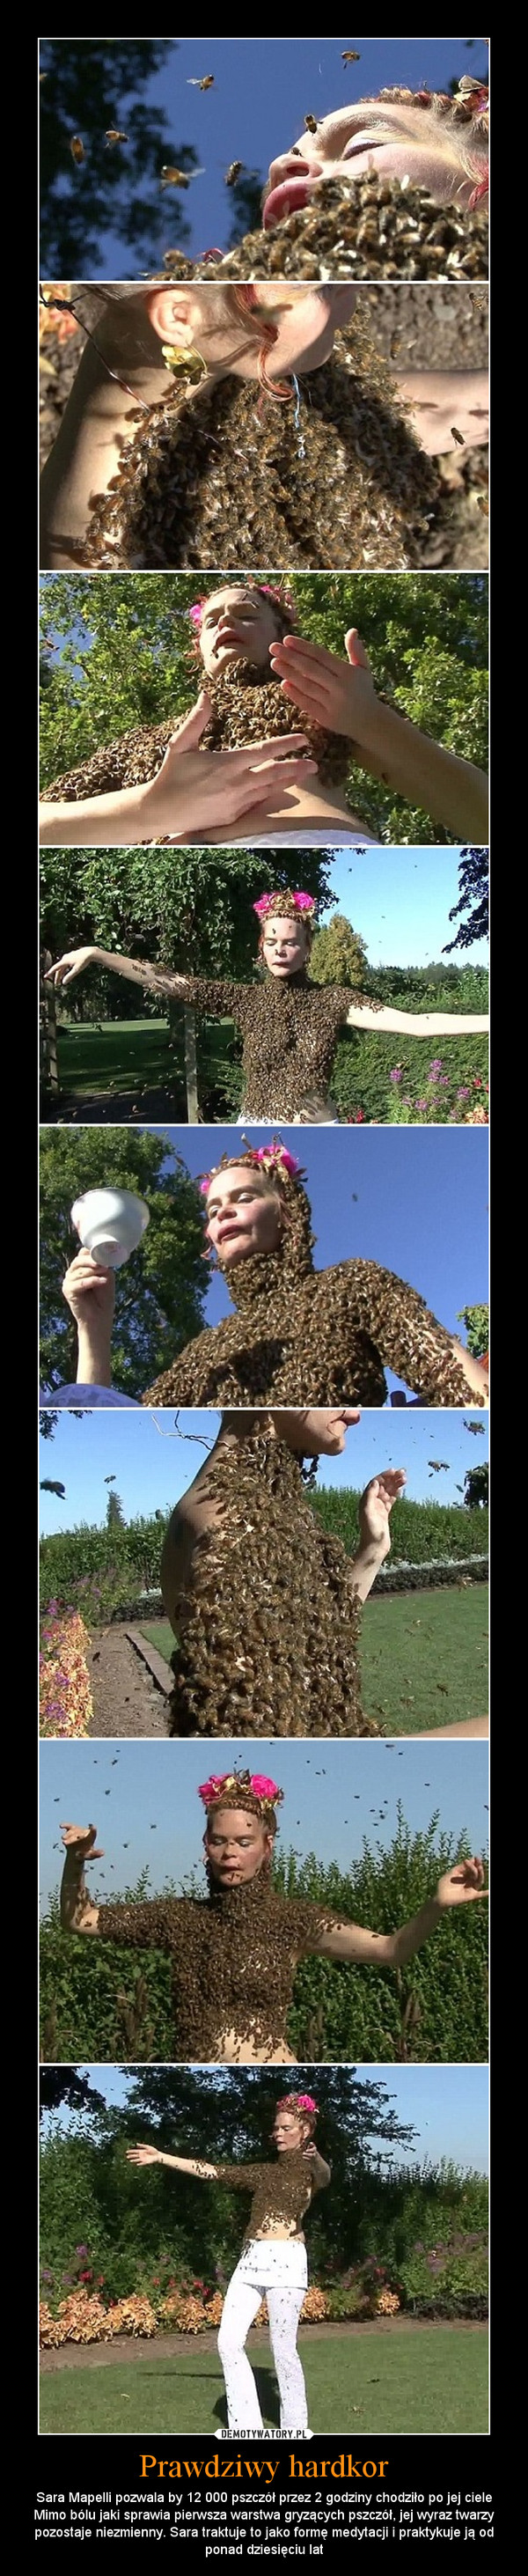 Prawdziwy hardkor – Sara Mapelli pozwala by 12 000 pszczół przez 2 godziny chodziło po jej ciele Mimo bólu jaki sprawia pierwsza warstwa gryzących pszczół, jej wyraz twarzy pozostaje niezmienny. Sara traktuje to jako formę medytacji i praktykuje ją od ponad dziesięciu lat 